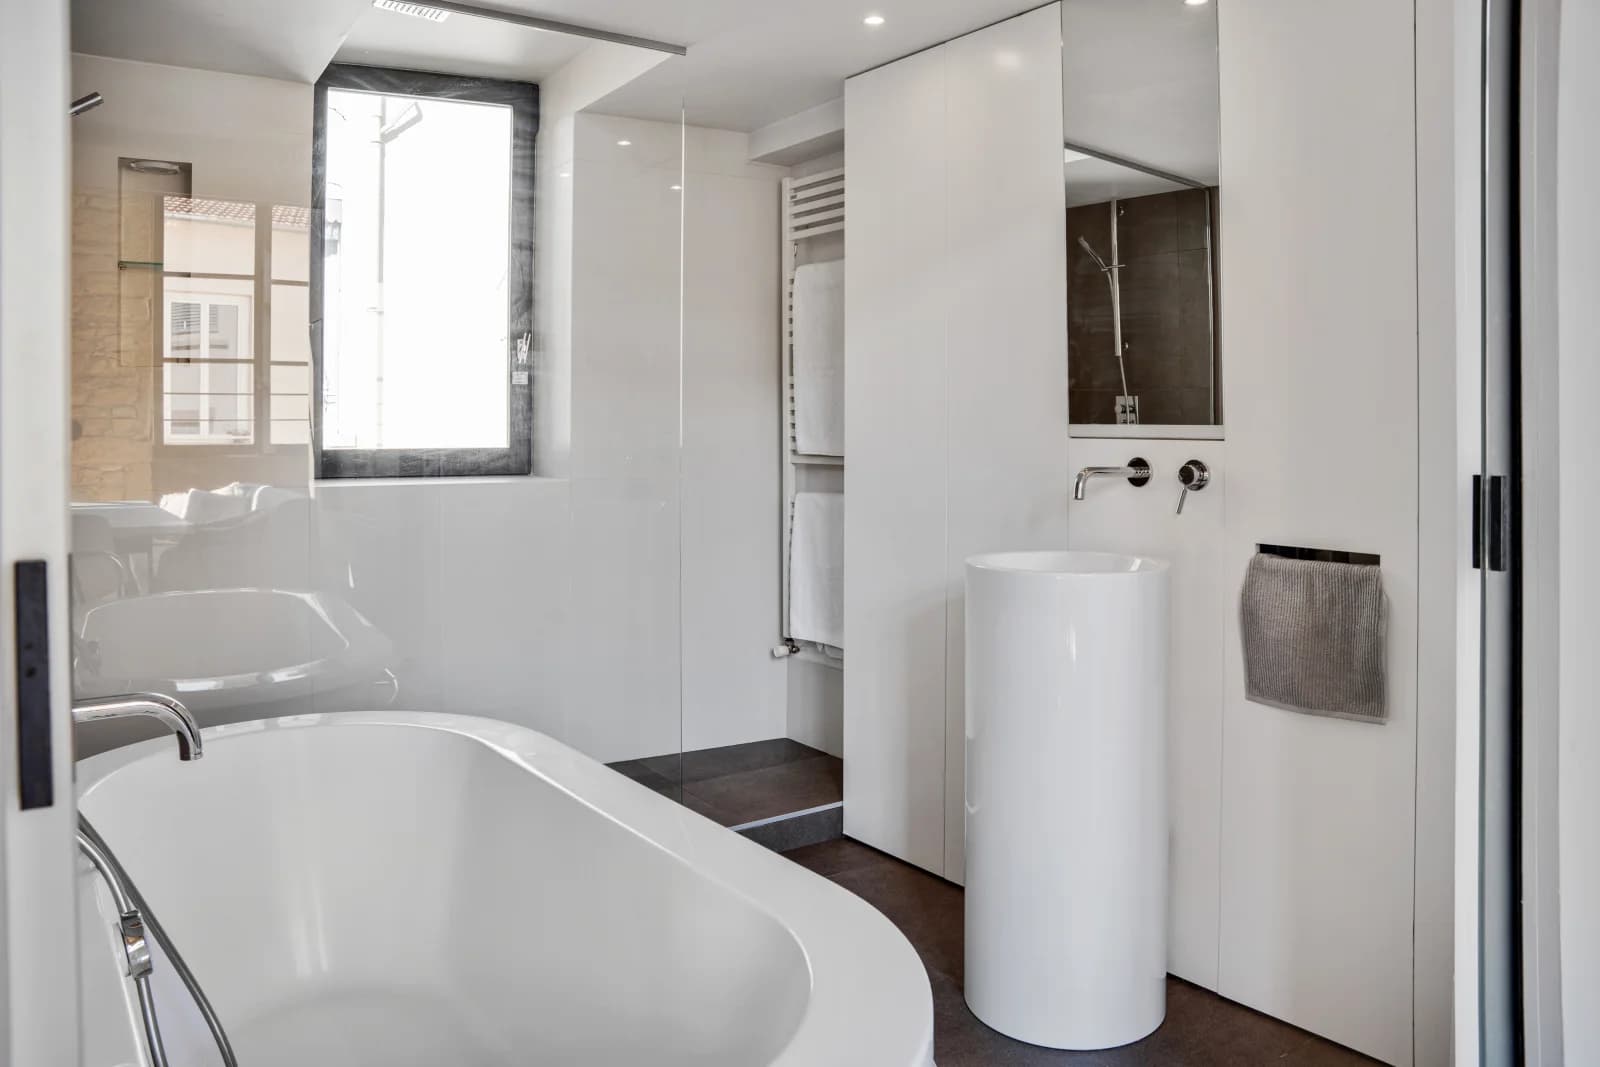 Salle de bain dans Appartement Canut style Loft - Rénov architecte  - 1